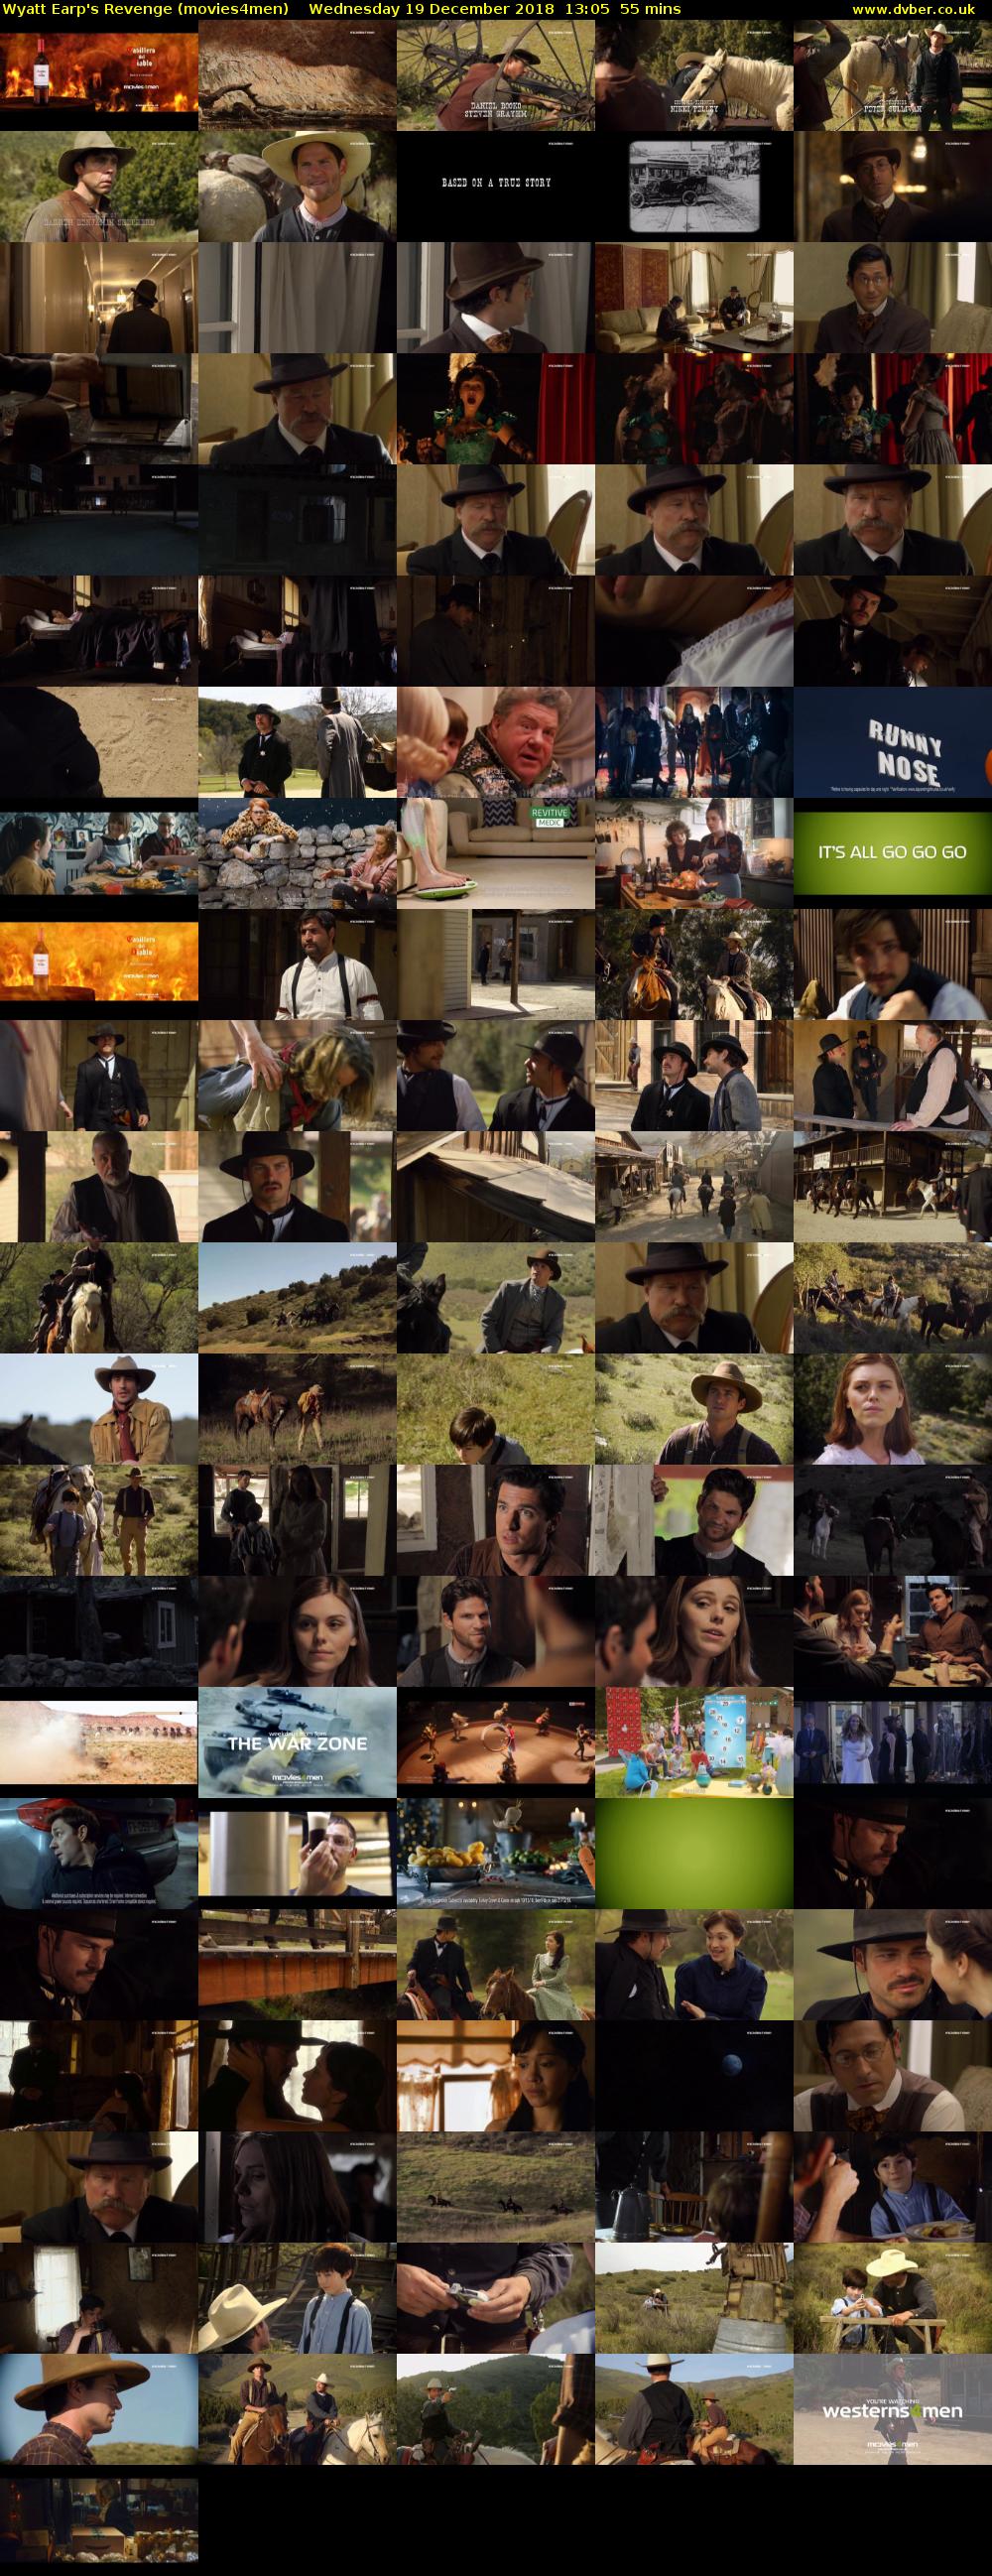 Wyatt Earp's Revenge (movies4men) Wednesday 19 December 2018 13:05 - 14:00